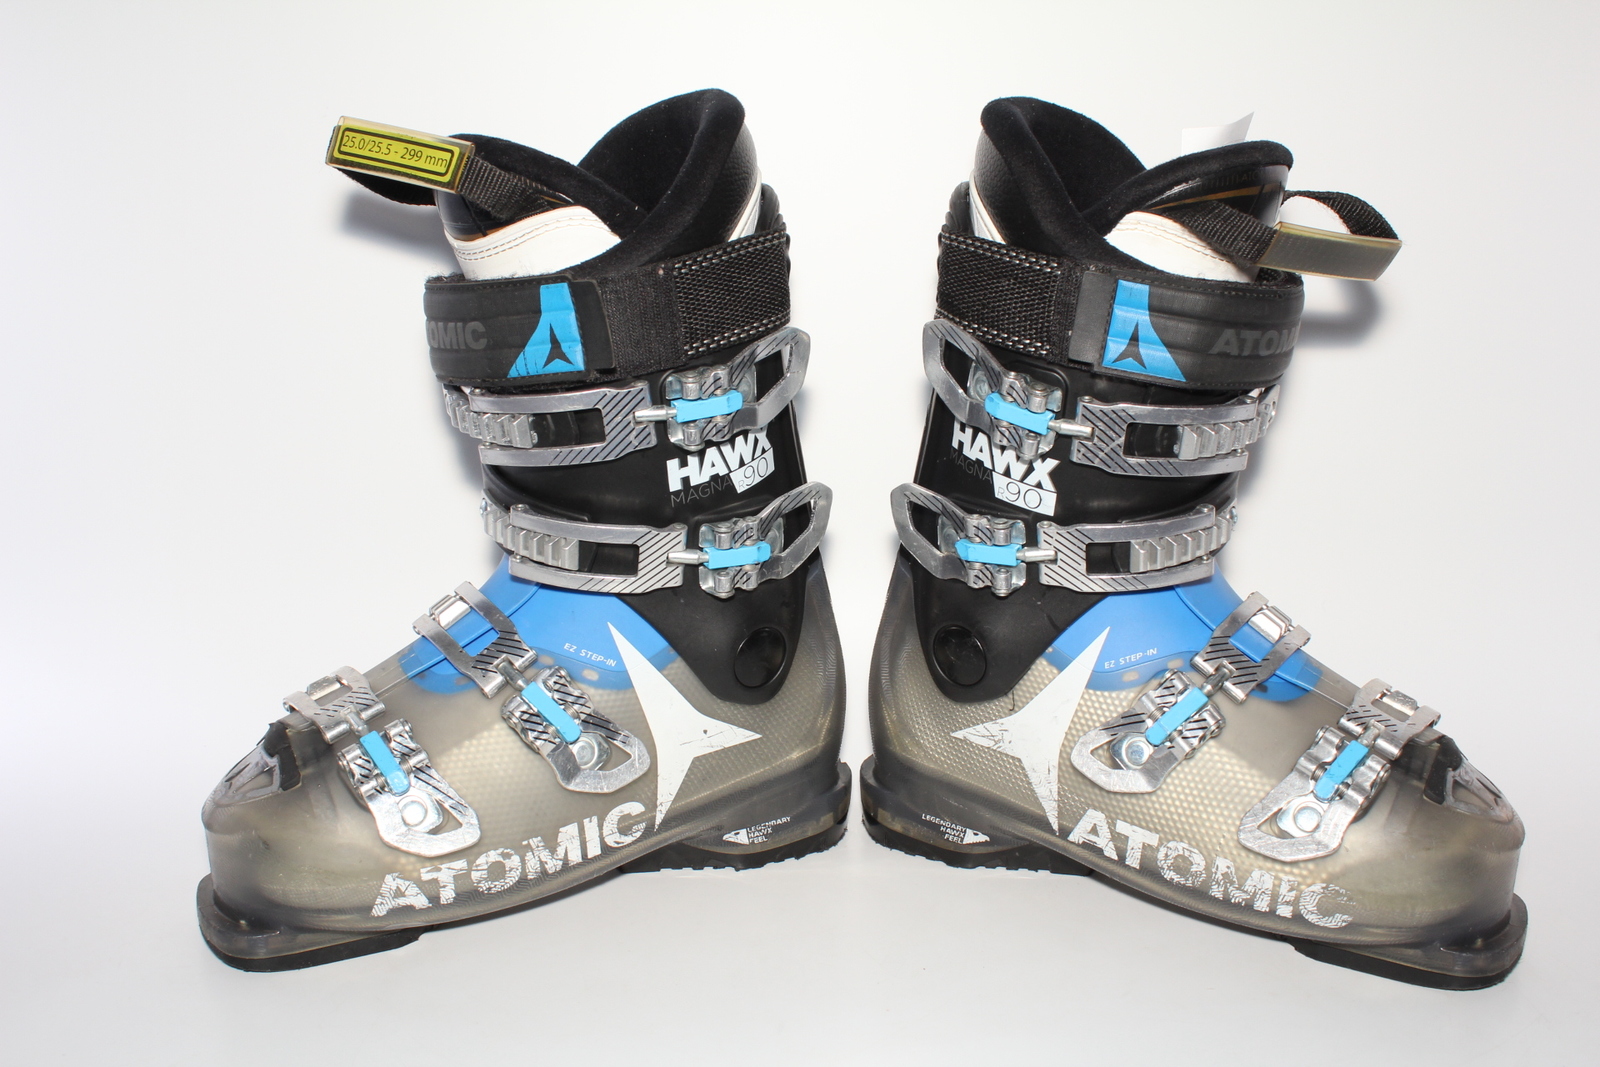 Lyžařské boty Atomic Hawx Magna R90 vel. EU40 flexe 90